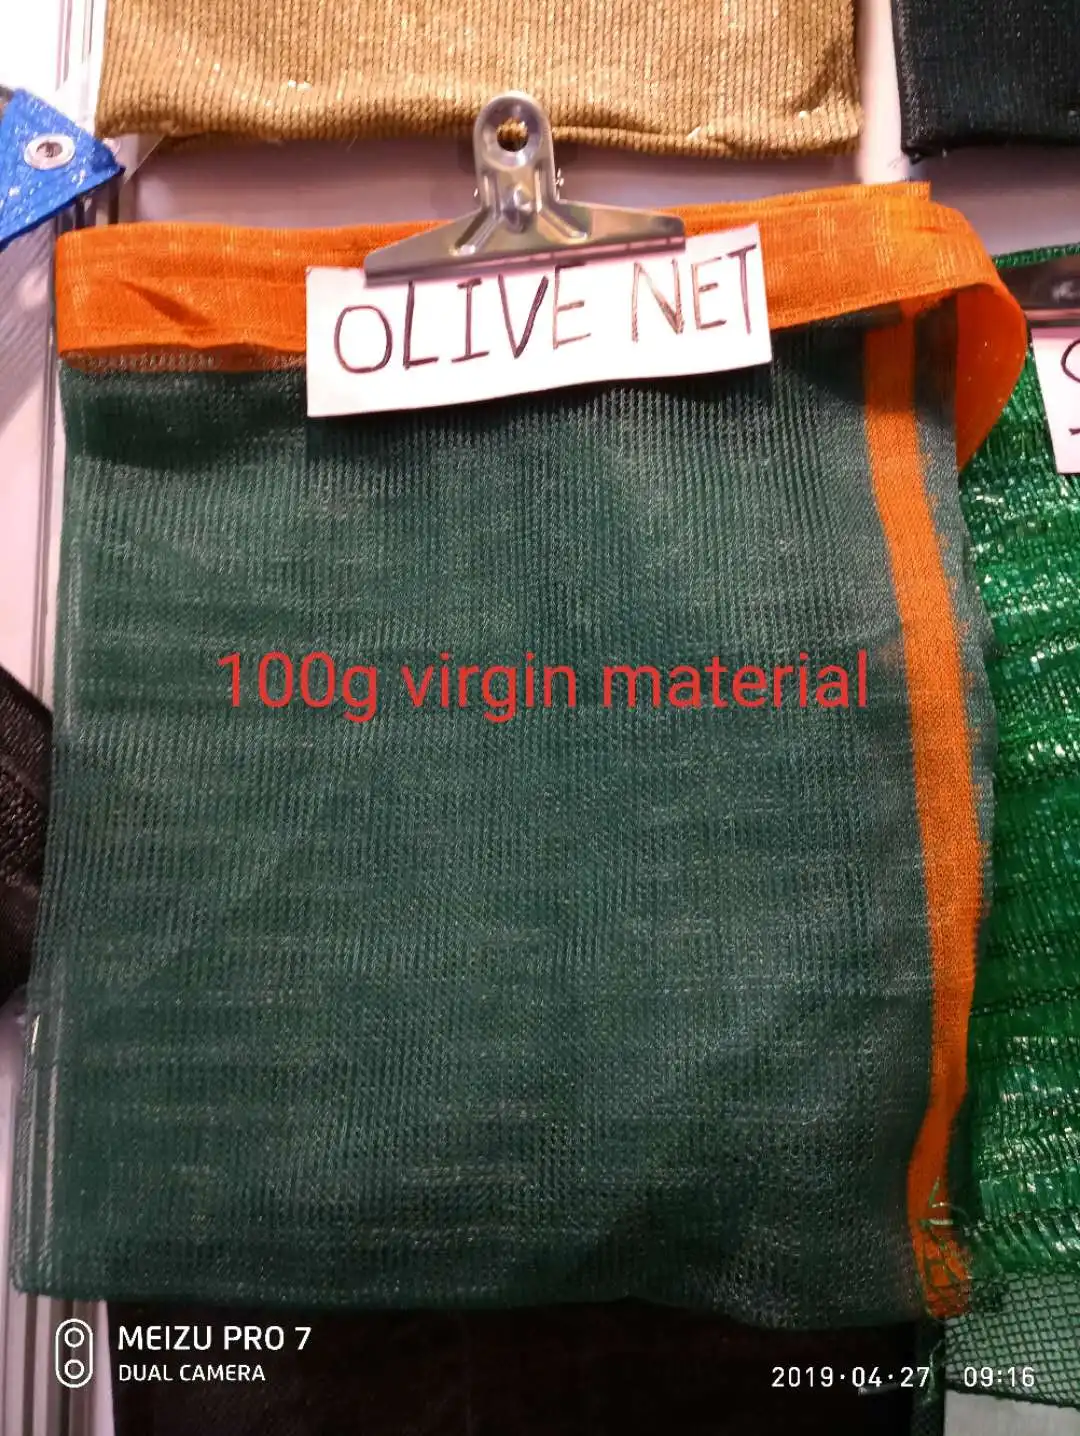 olive net for olive harvest